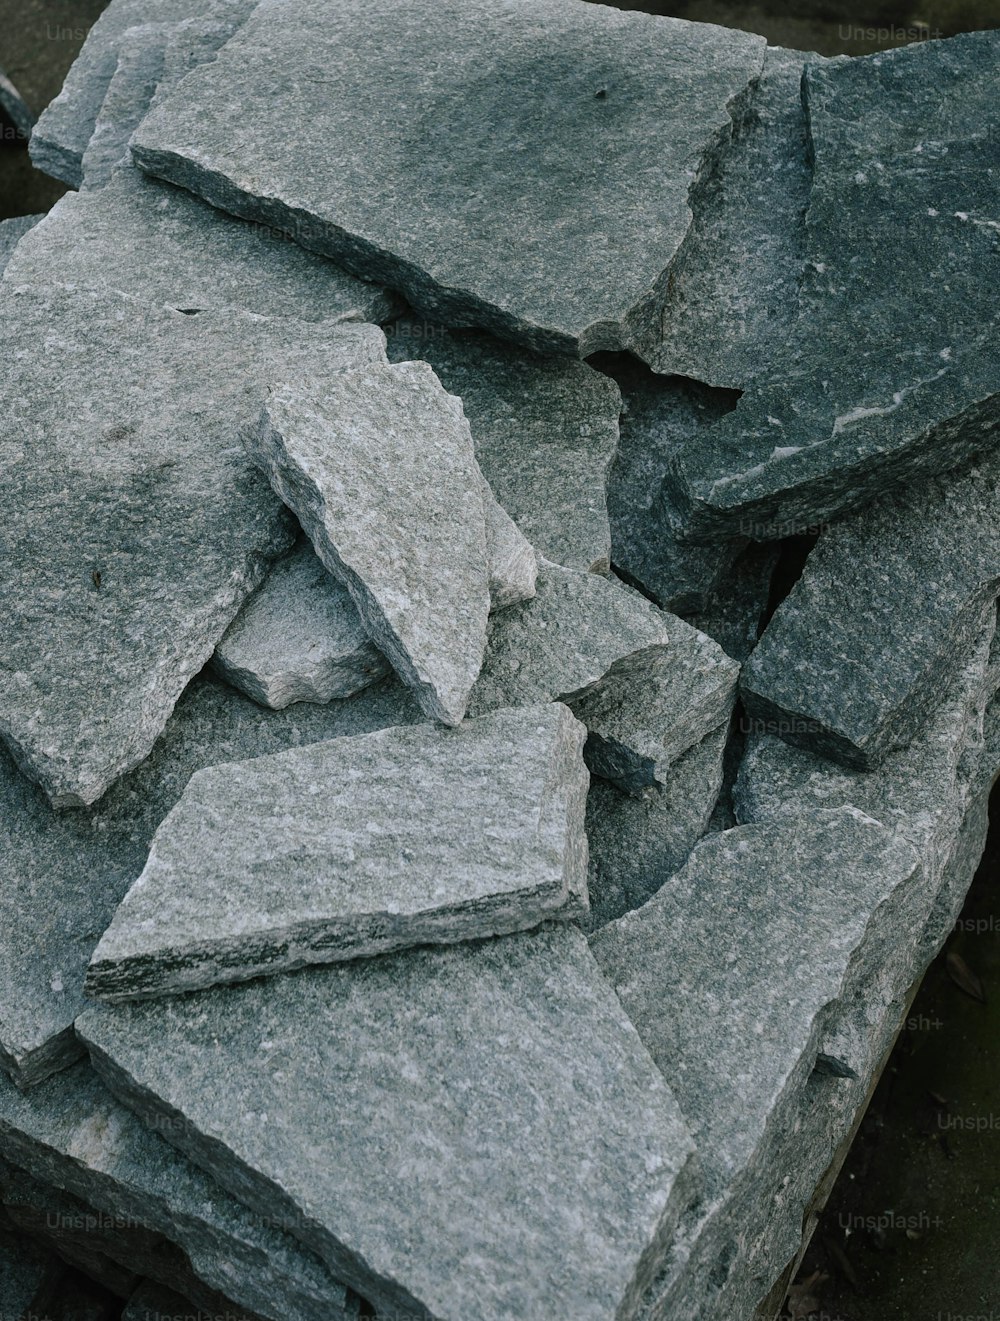 Ein Haufen grauer Steine, die auf einem Bürgersteig sitzen